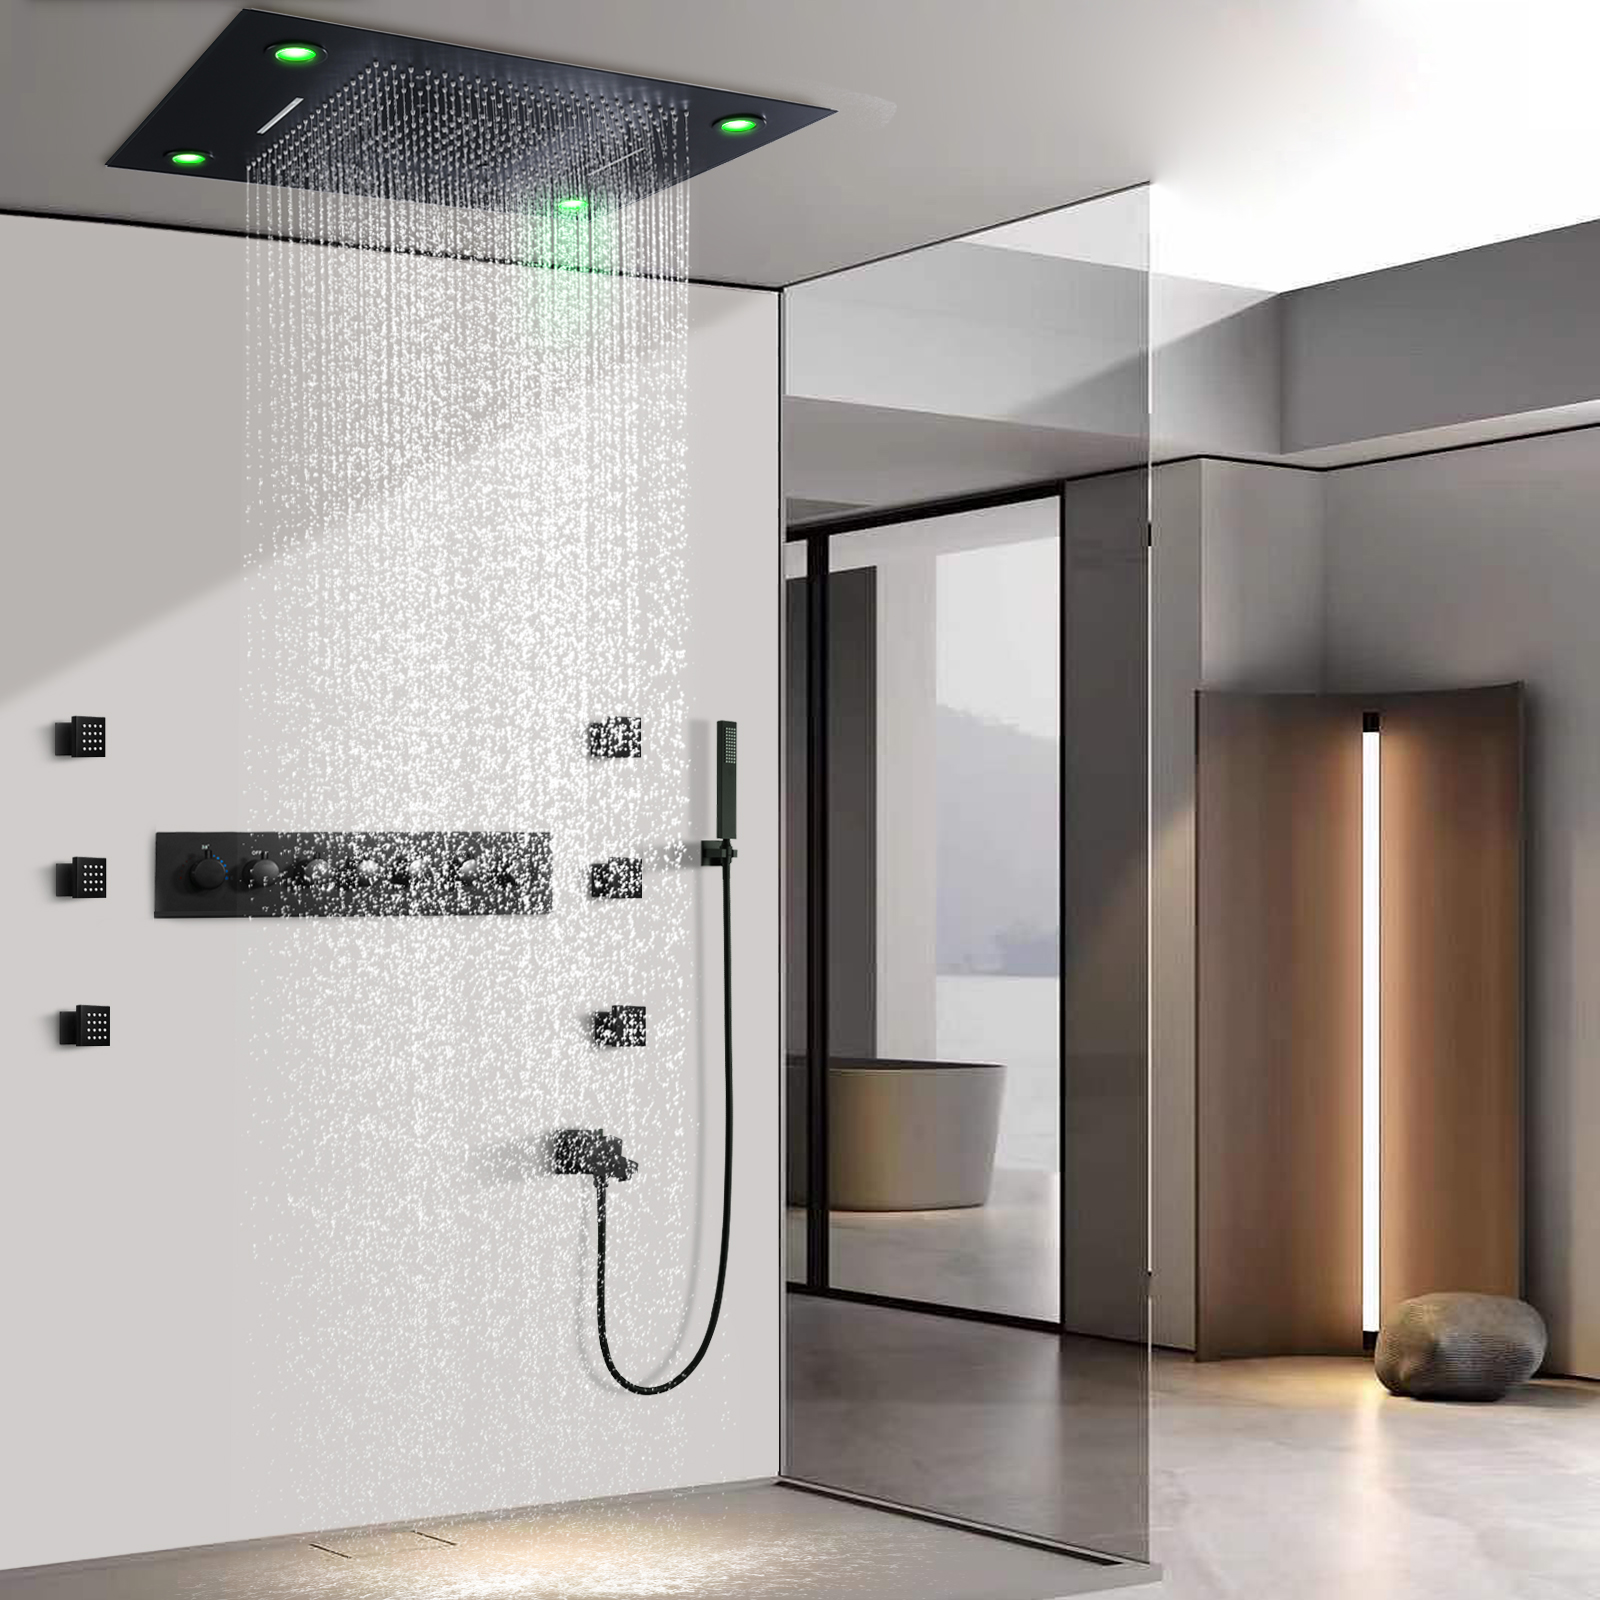 Cabezal de ducha negro de 800x600MM, sistema de ducha multifunción termostático LED para baño con chorros de cuerpo de ducha